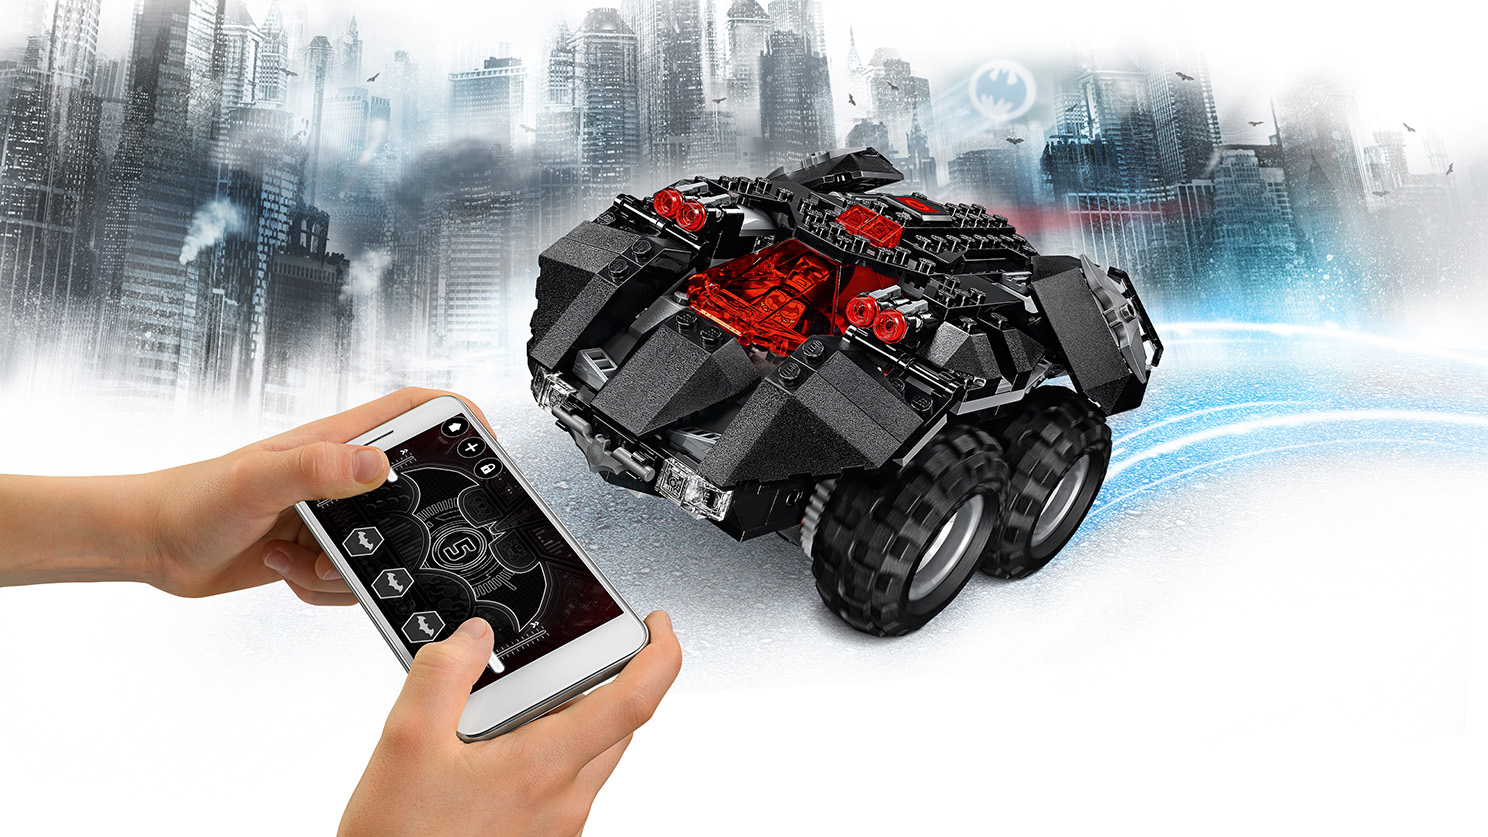 sensor beholder Alligevel App-Controlled Batmobile 76112 - LEGO® DC Sets - LEGO.com for kids